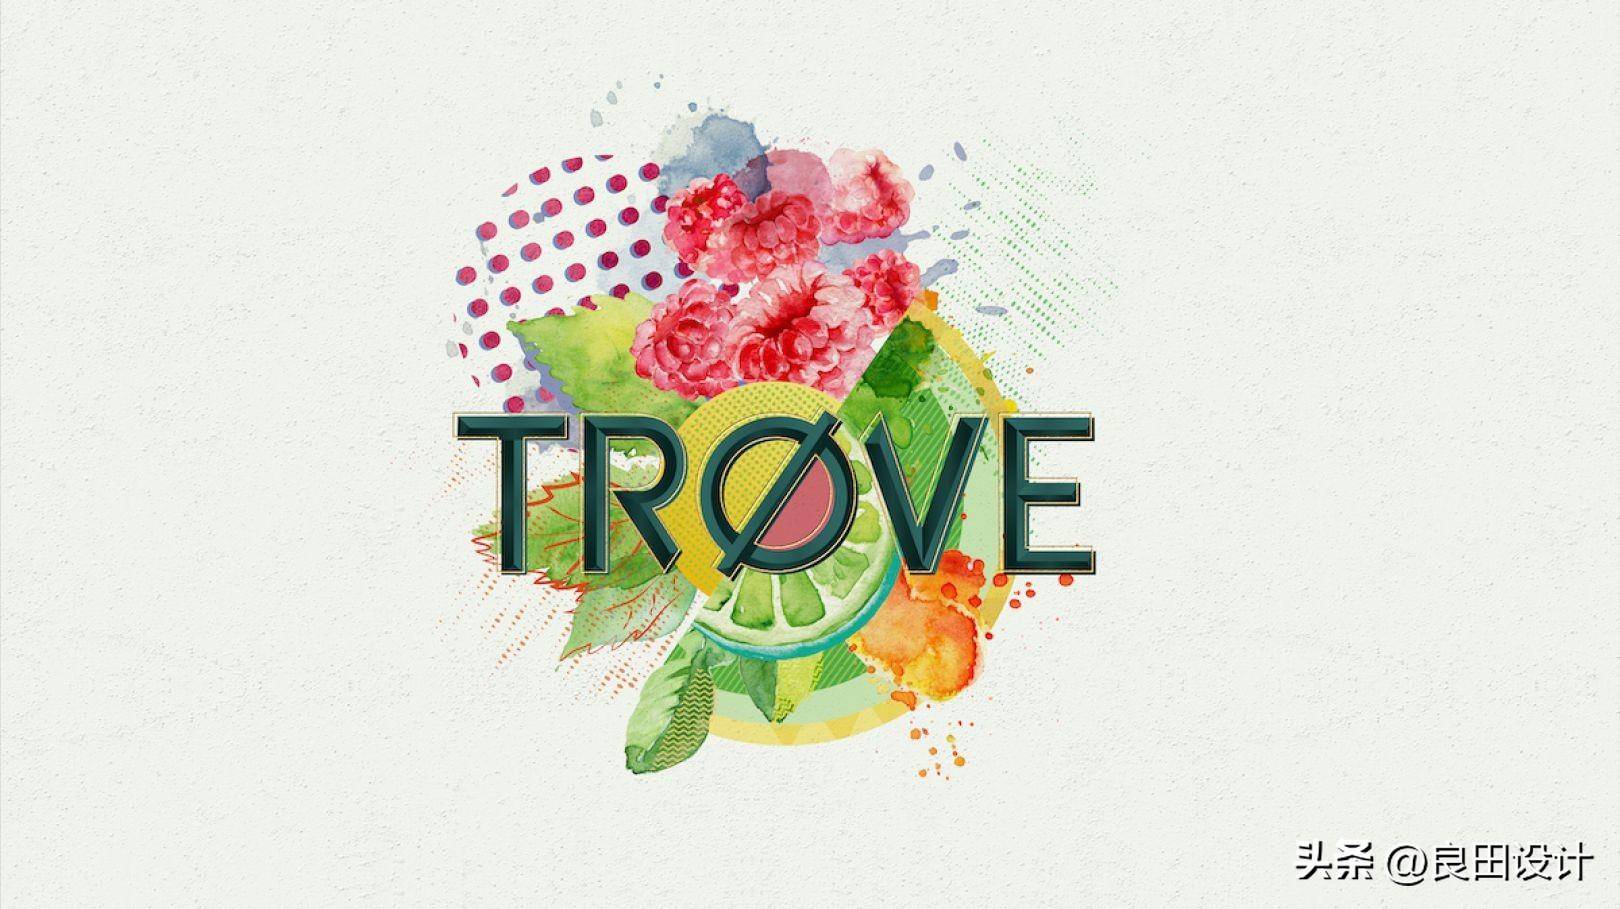 苹果主题插图手绘版:为新的低酒精、低热量烈酒品牌 TRØVE 创作的酒包装设计-第2张图片-太平洋在线下载